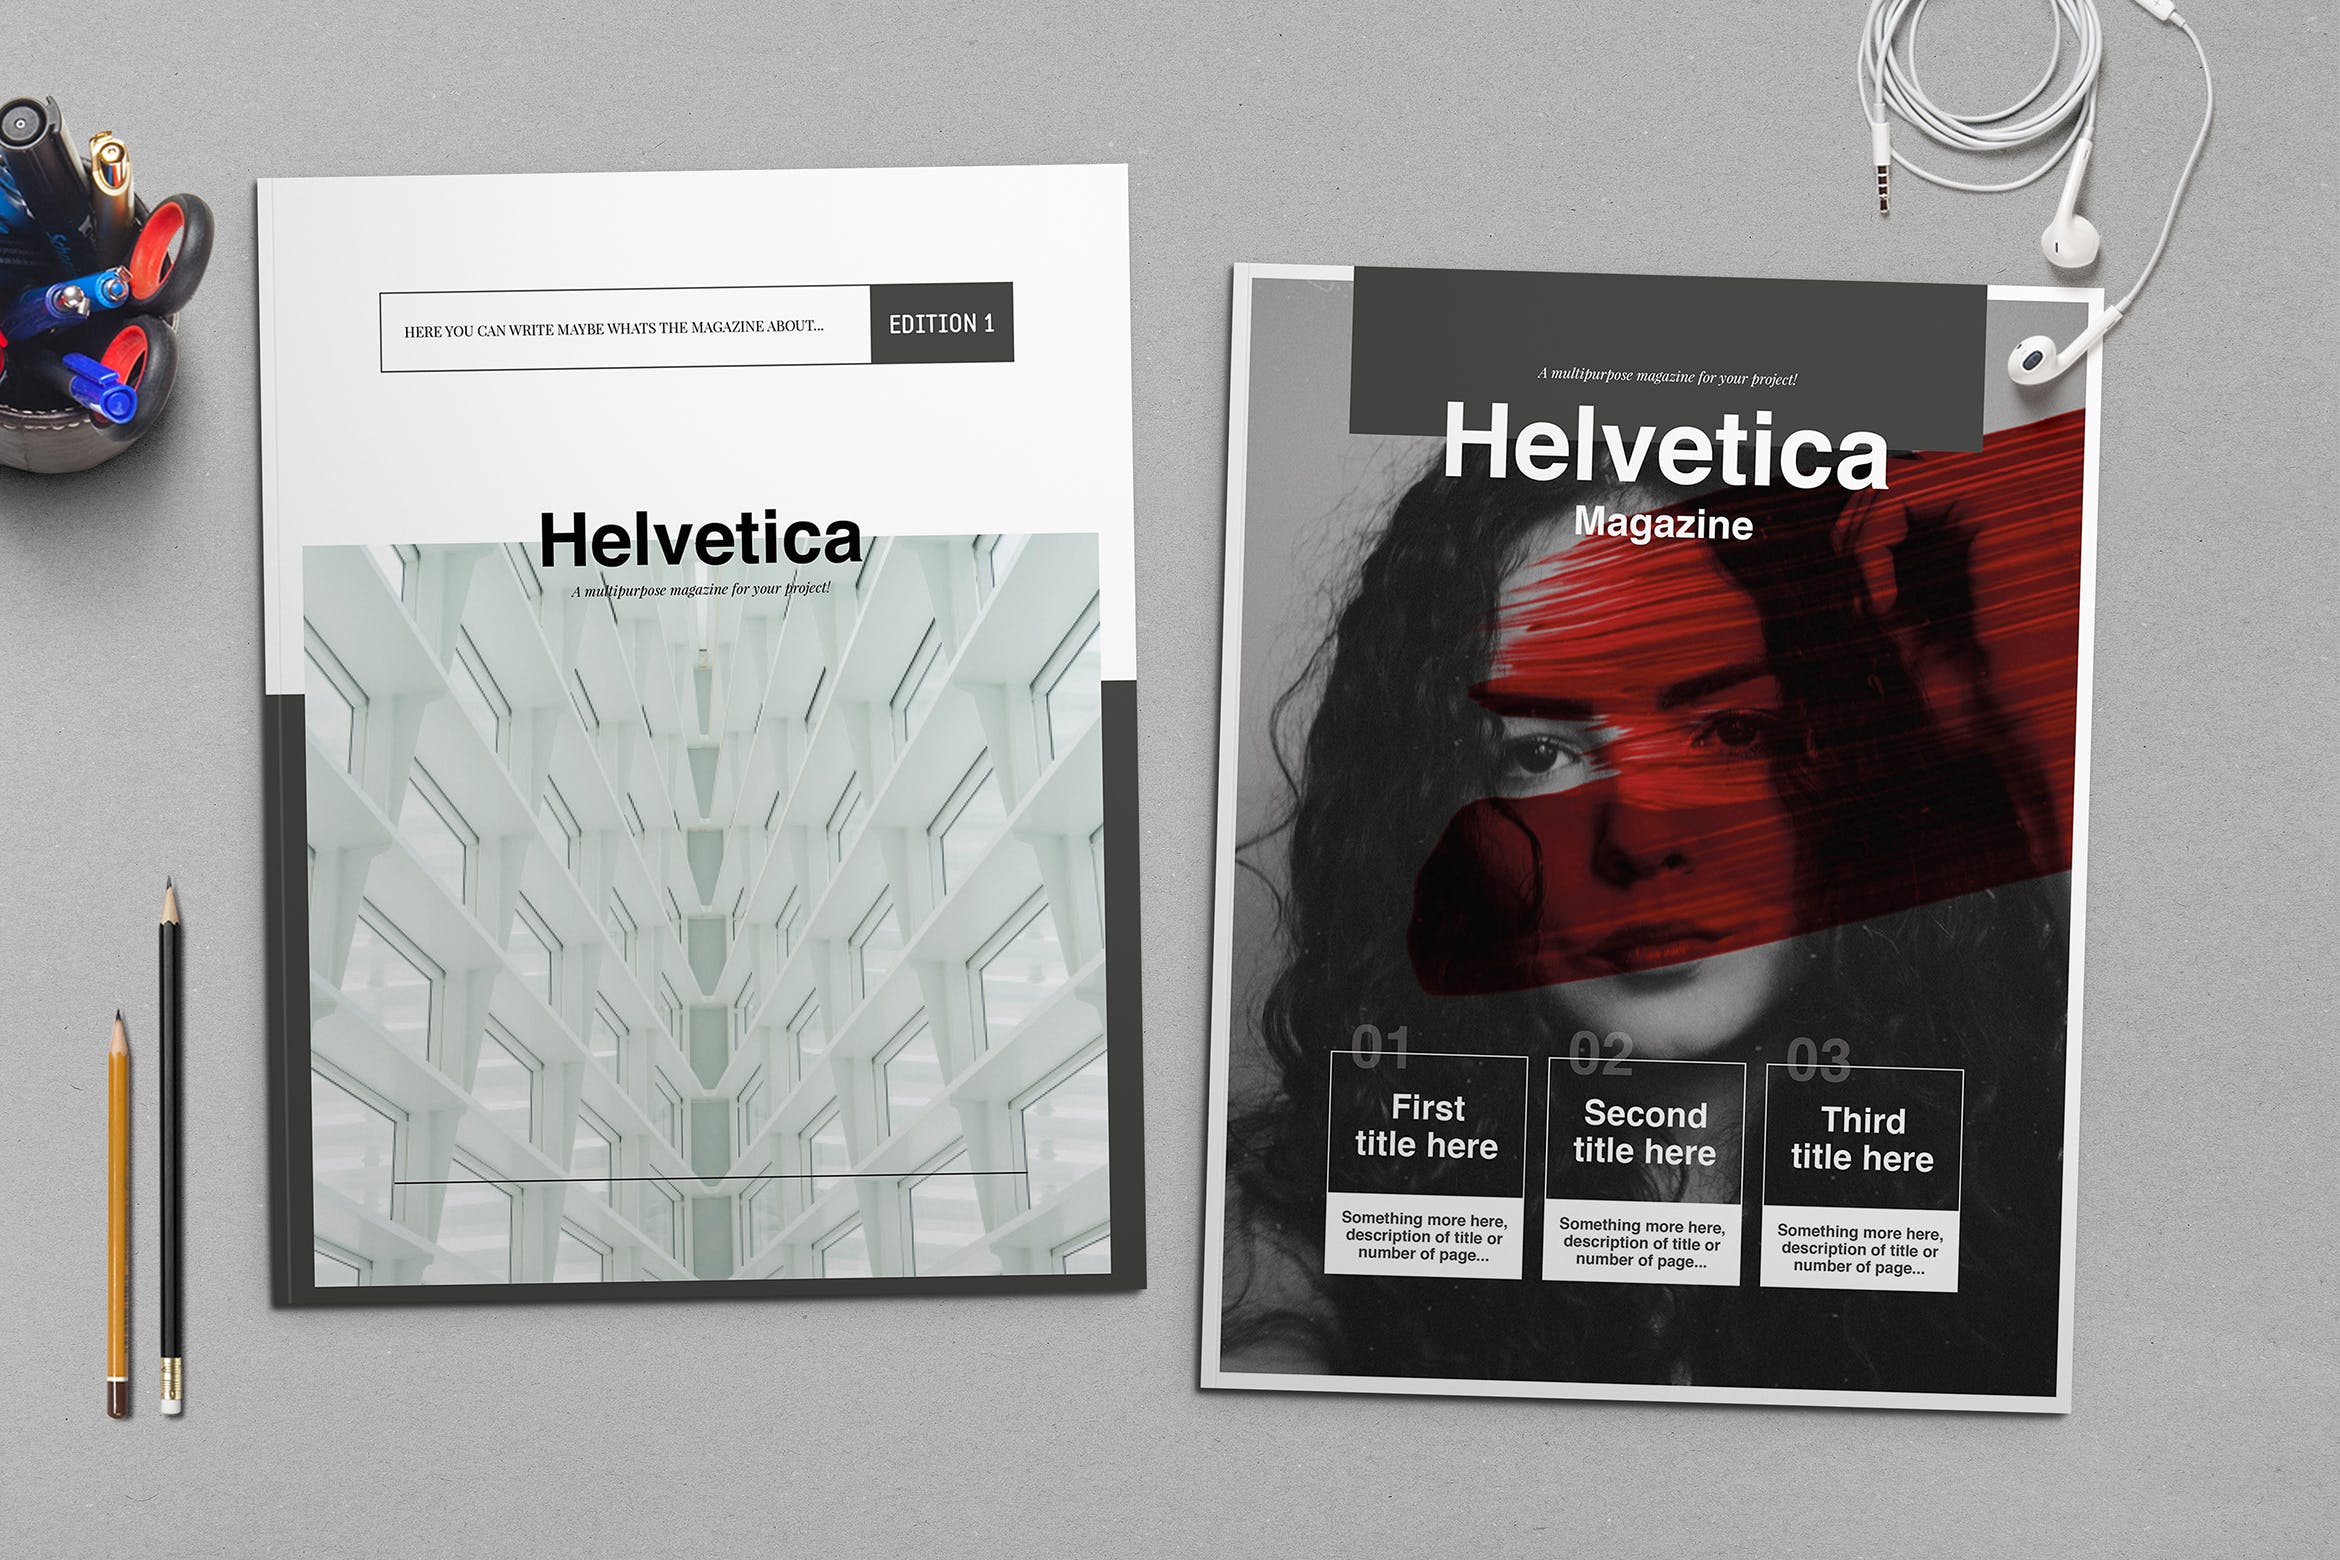 时尚行业产品评测杂志Indesign模板下载 Helvetica Magazine Indesign Template插图